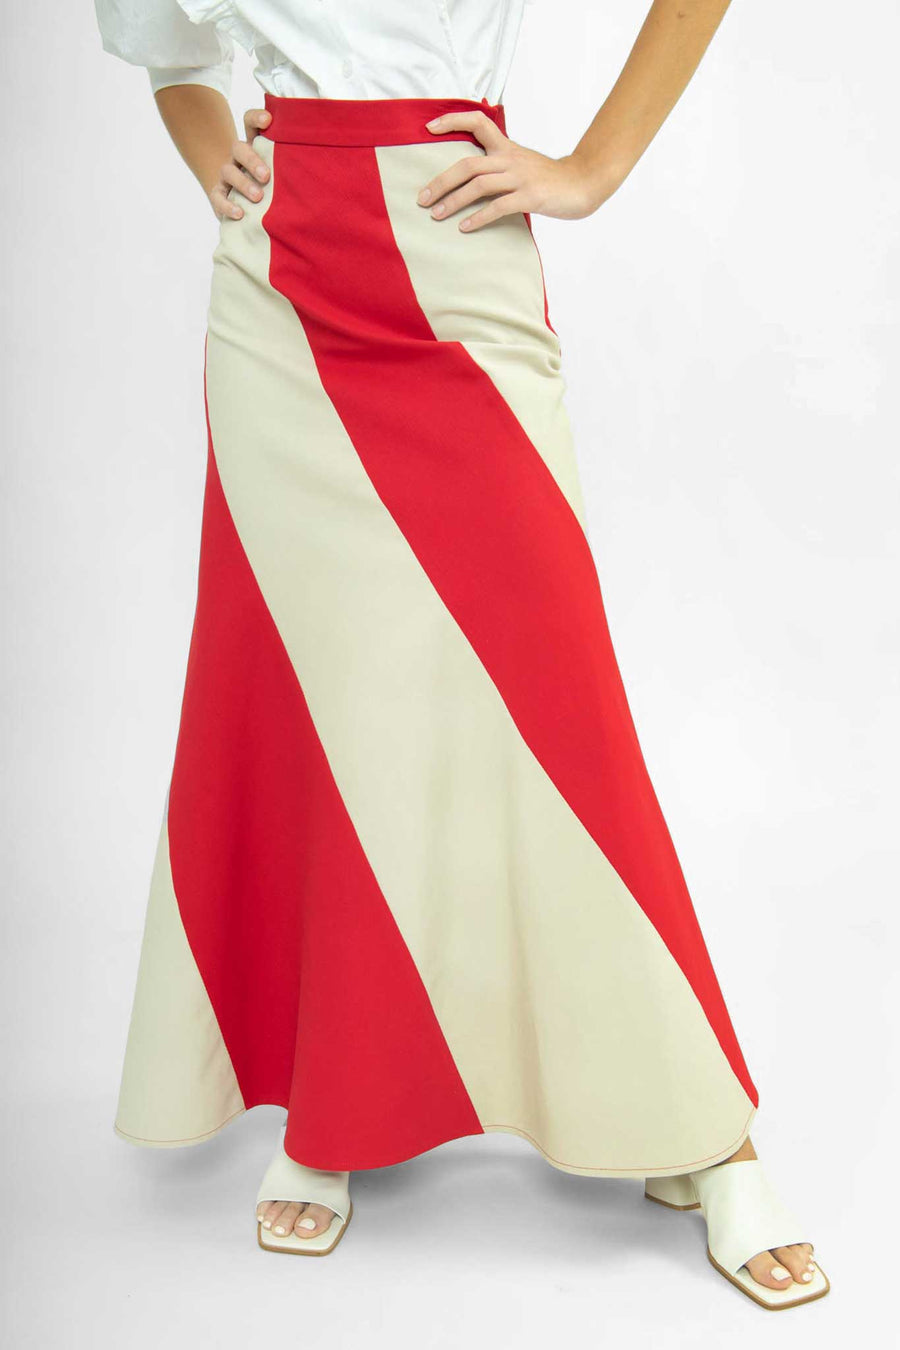 BATSHEVA - Cera Skirt in Red Cotton Twill